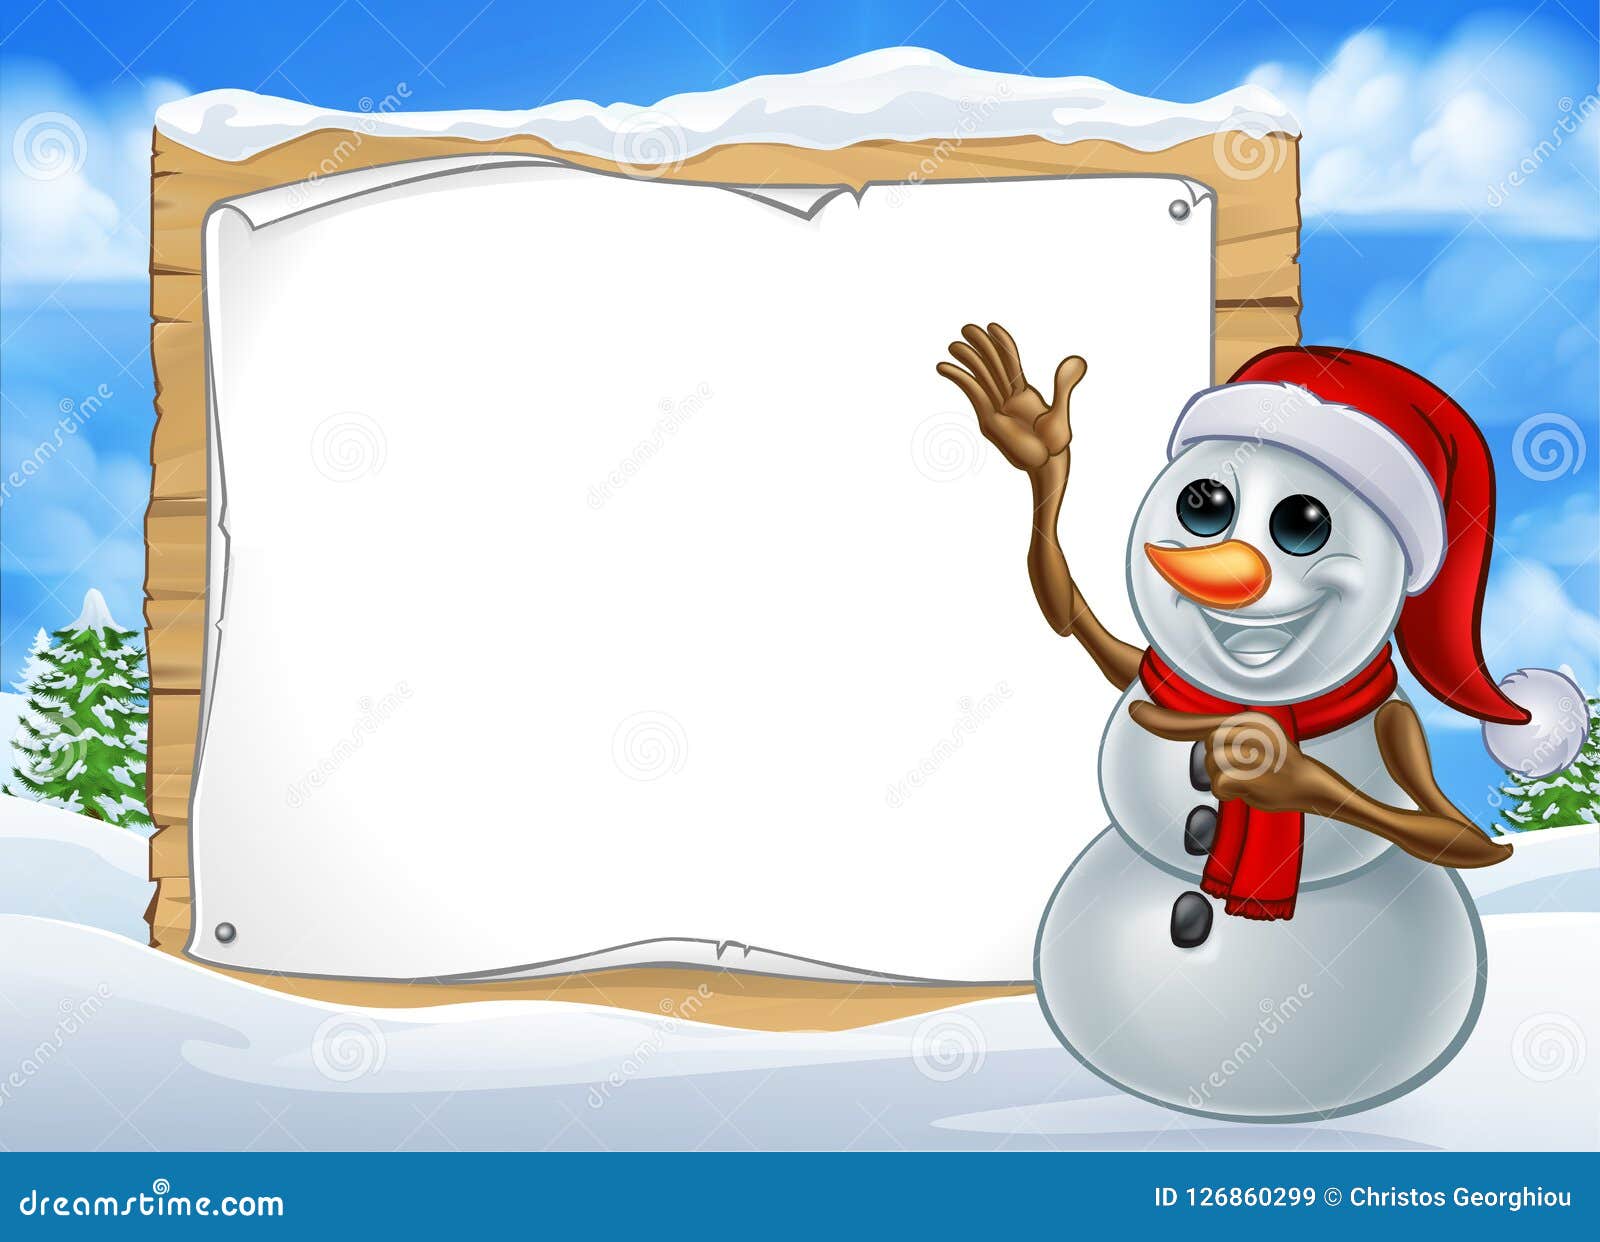 Cartoni Di Natale.Segno Del Personaggio Dei Cartoni Animati Di Natale Del Pupazzo Di Neve Illustrazione Vettoriale Illustrazione Di Telaio Indicare 126860299